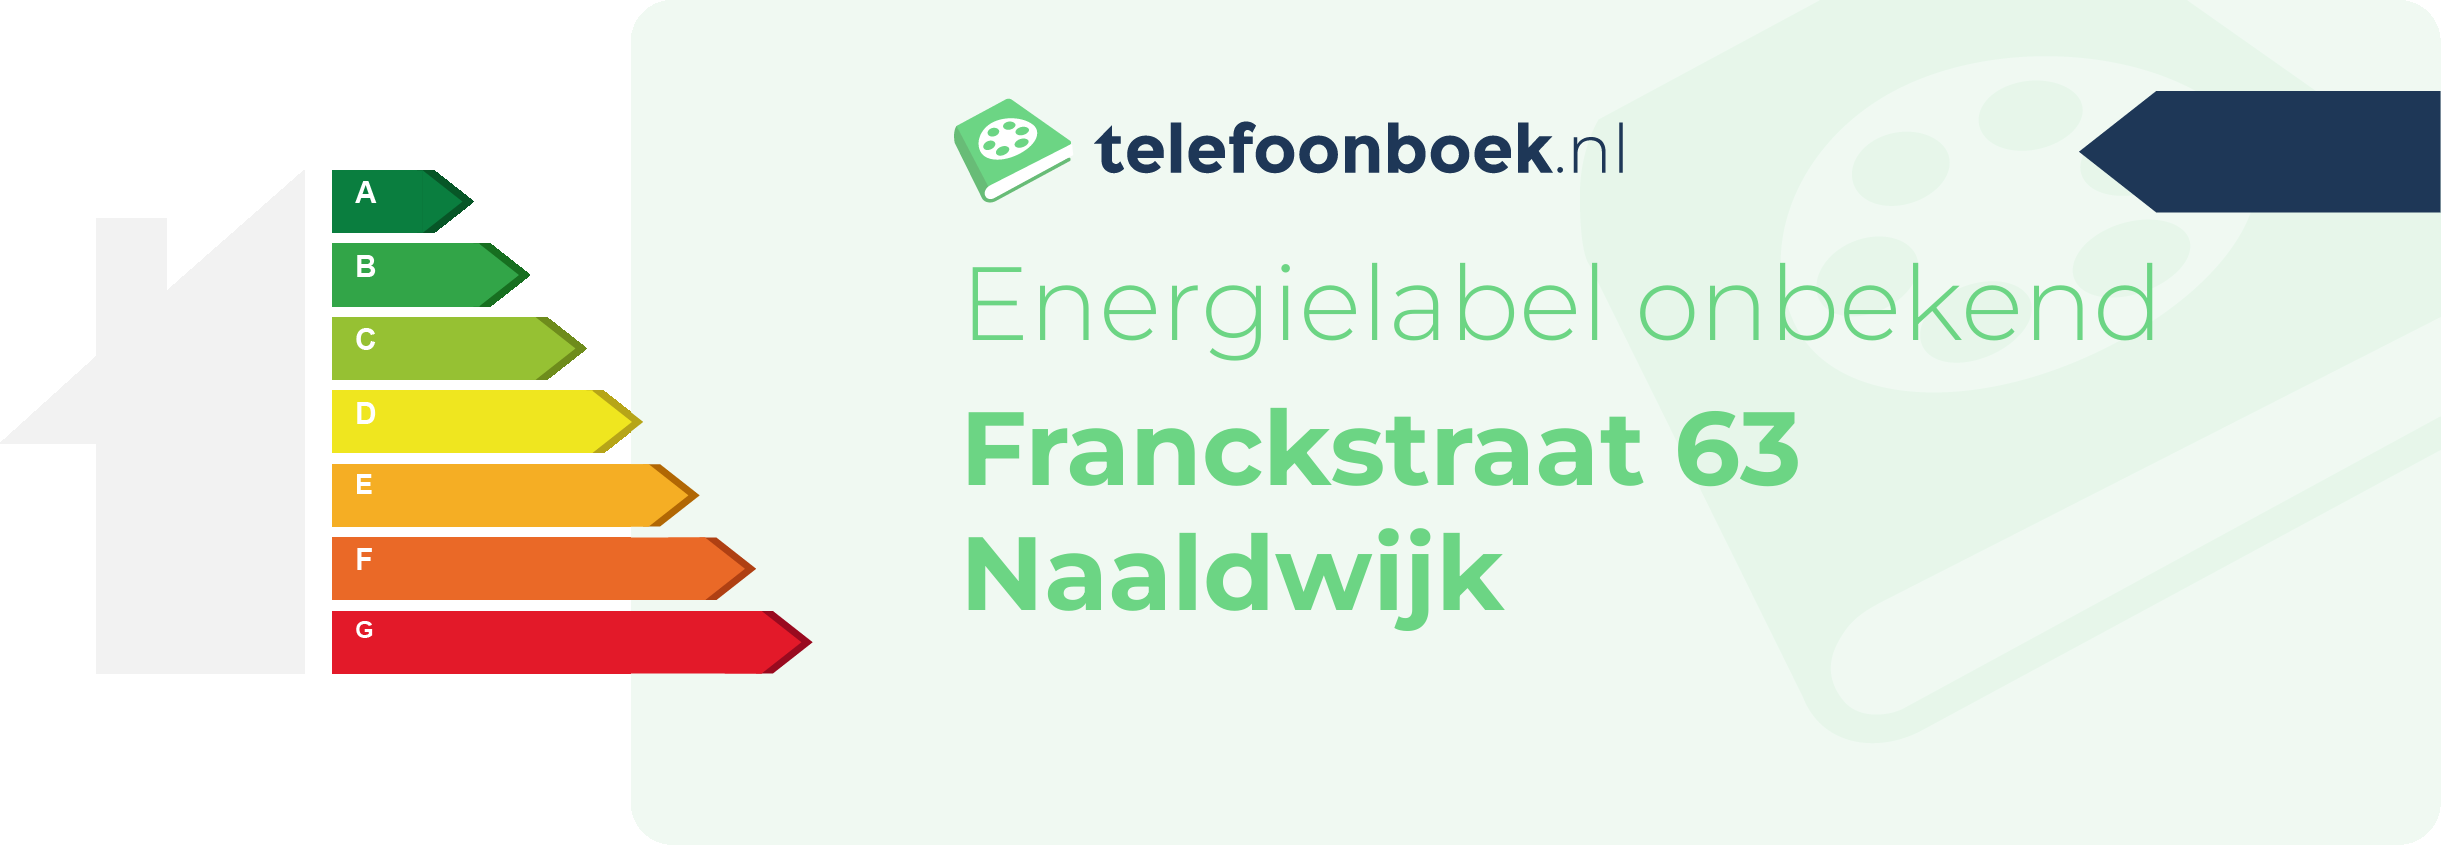 Energielabel Franckstraat 63 Naaldwijk